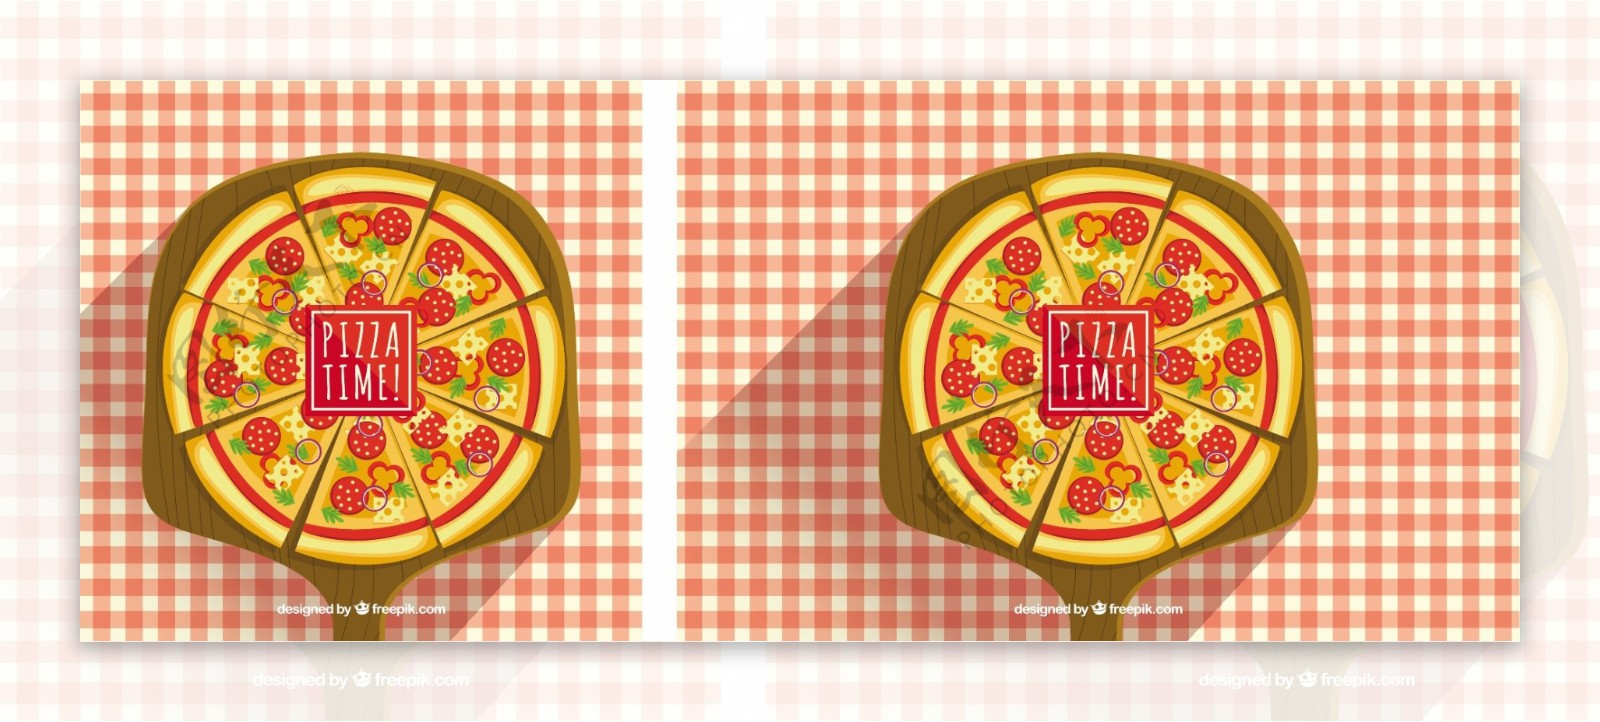 案板上的pizza比萨饼底方格桌布洋葱圈奶酪pizzatime